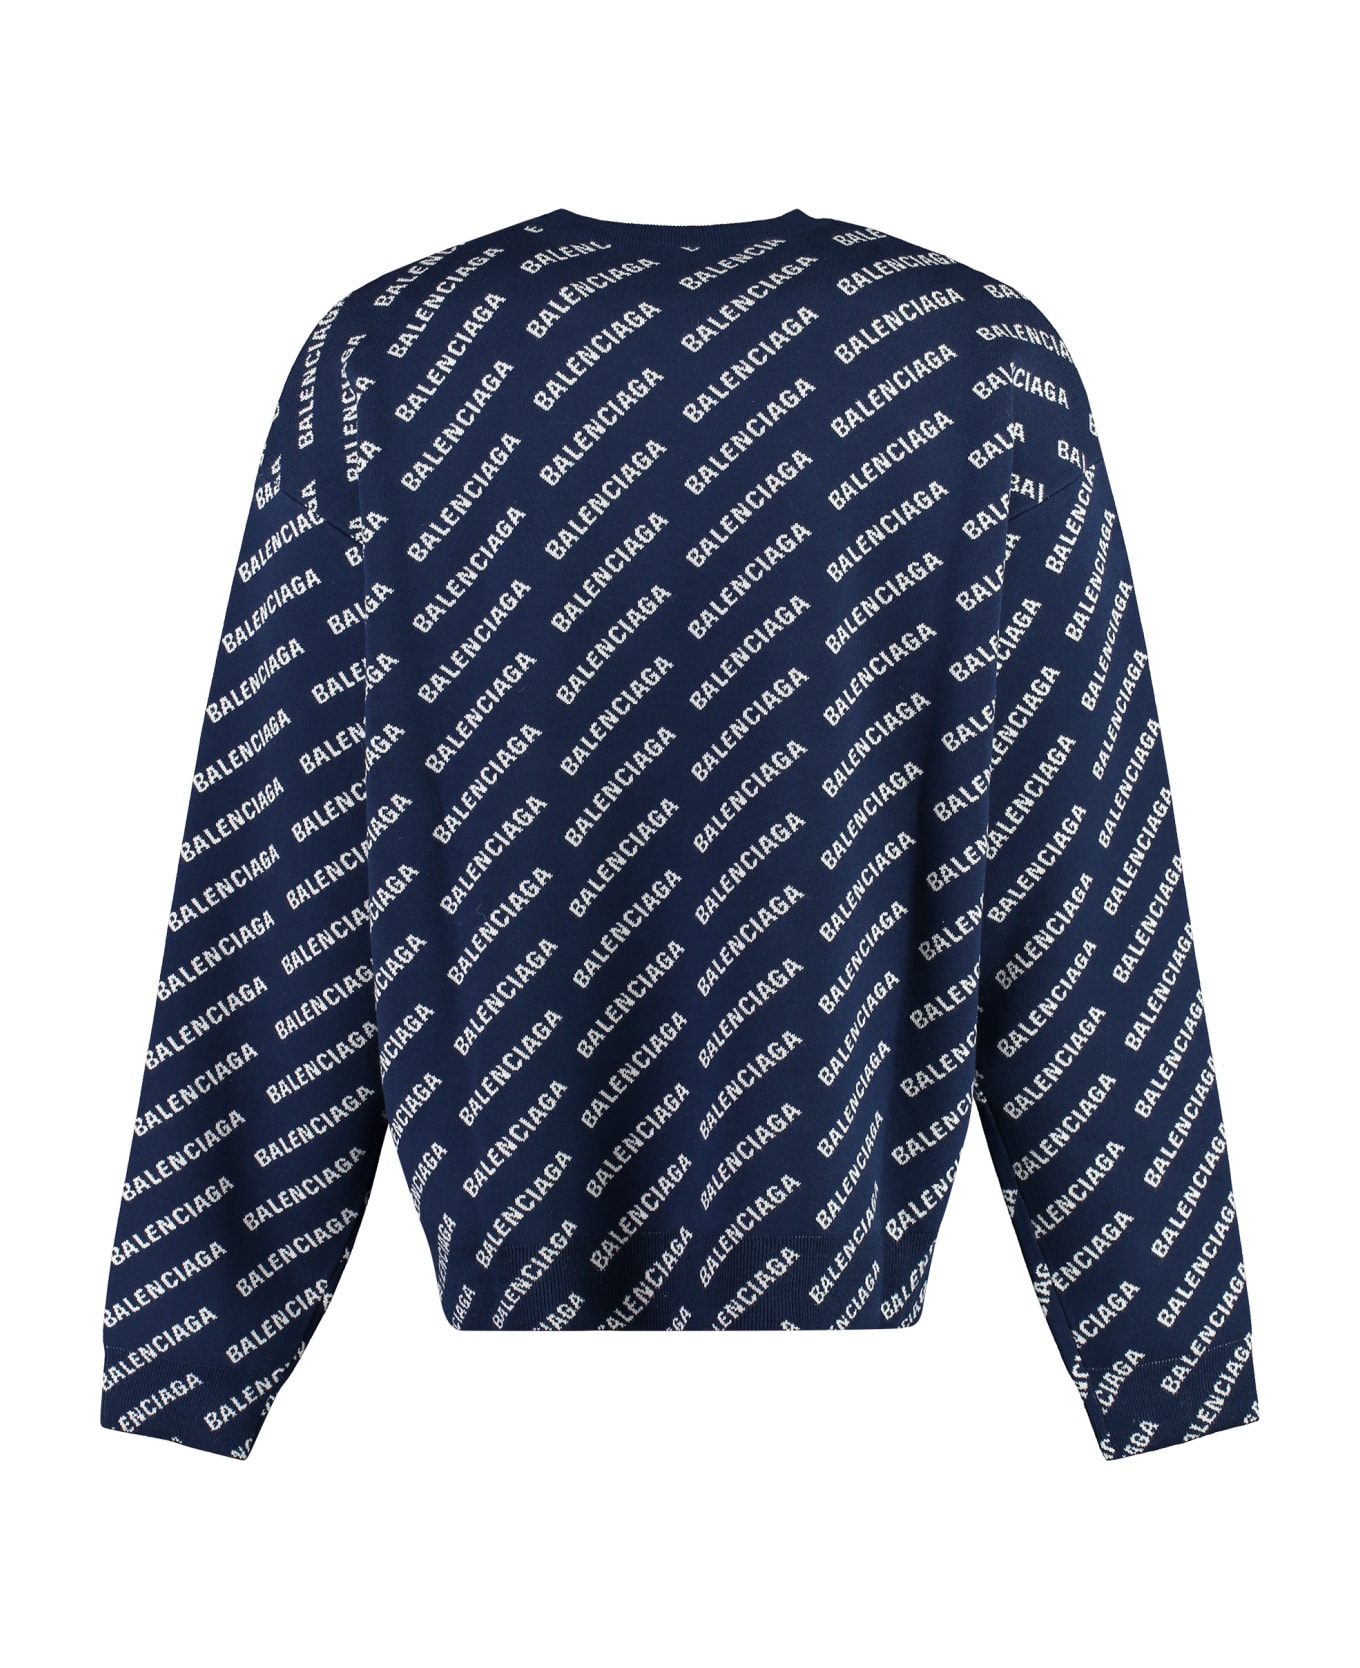 Balenciaga Long Sleeve Crew-neck Sweater - Blue